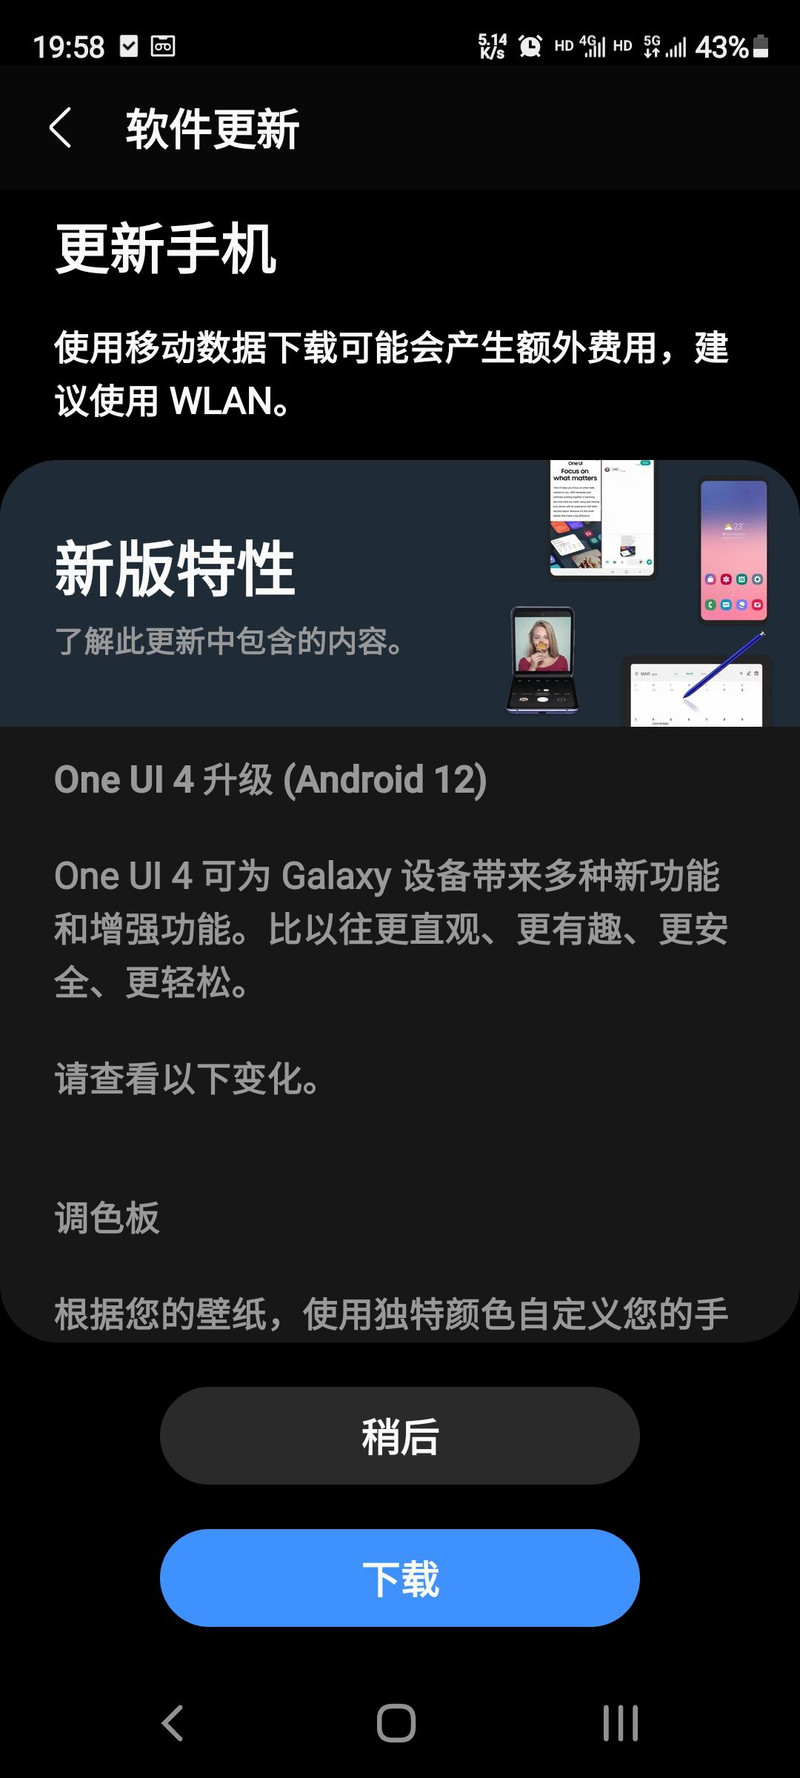 三星Galaxy S20 FE开始推送One UI 4.0系统更新